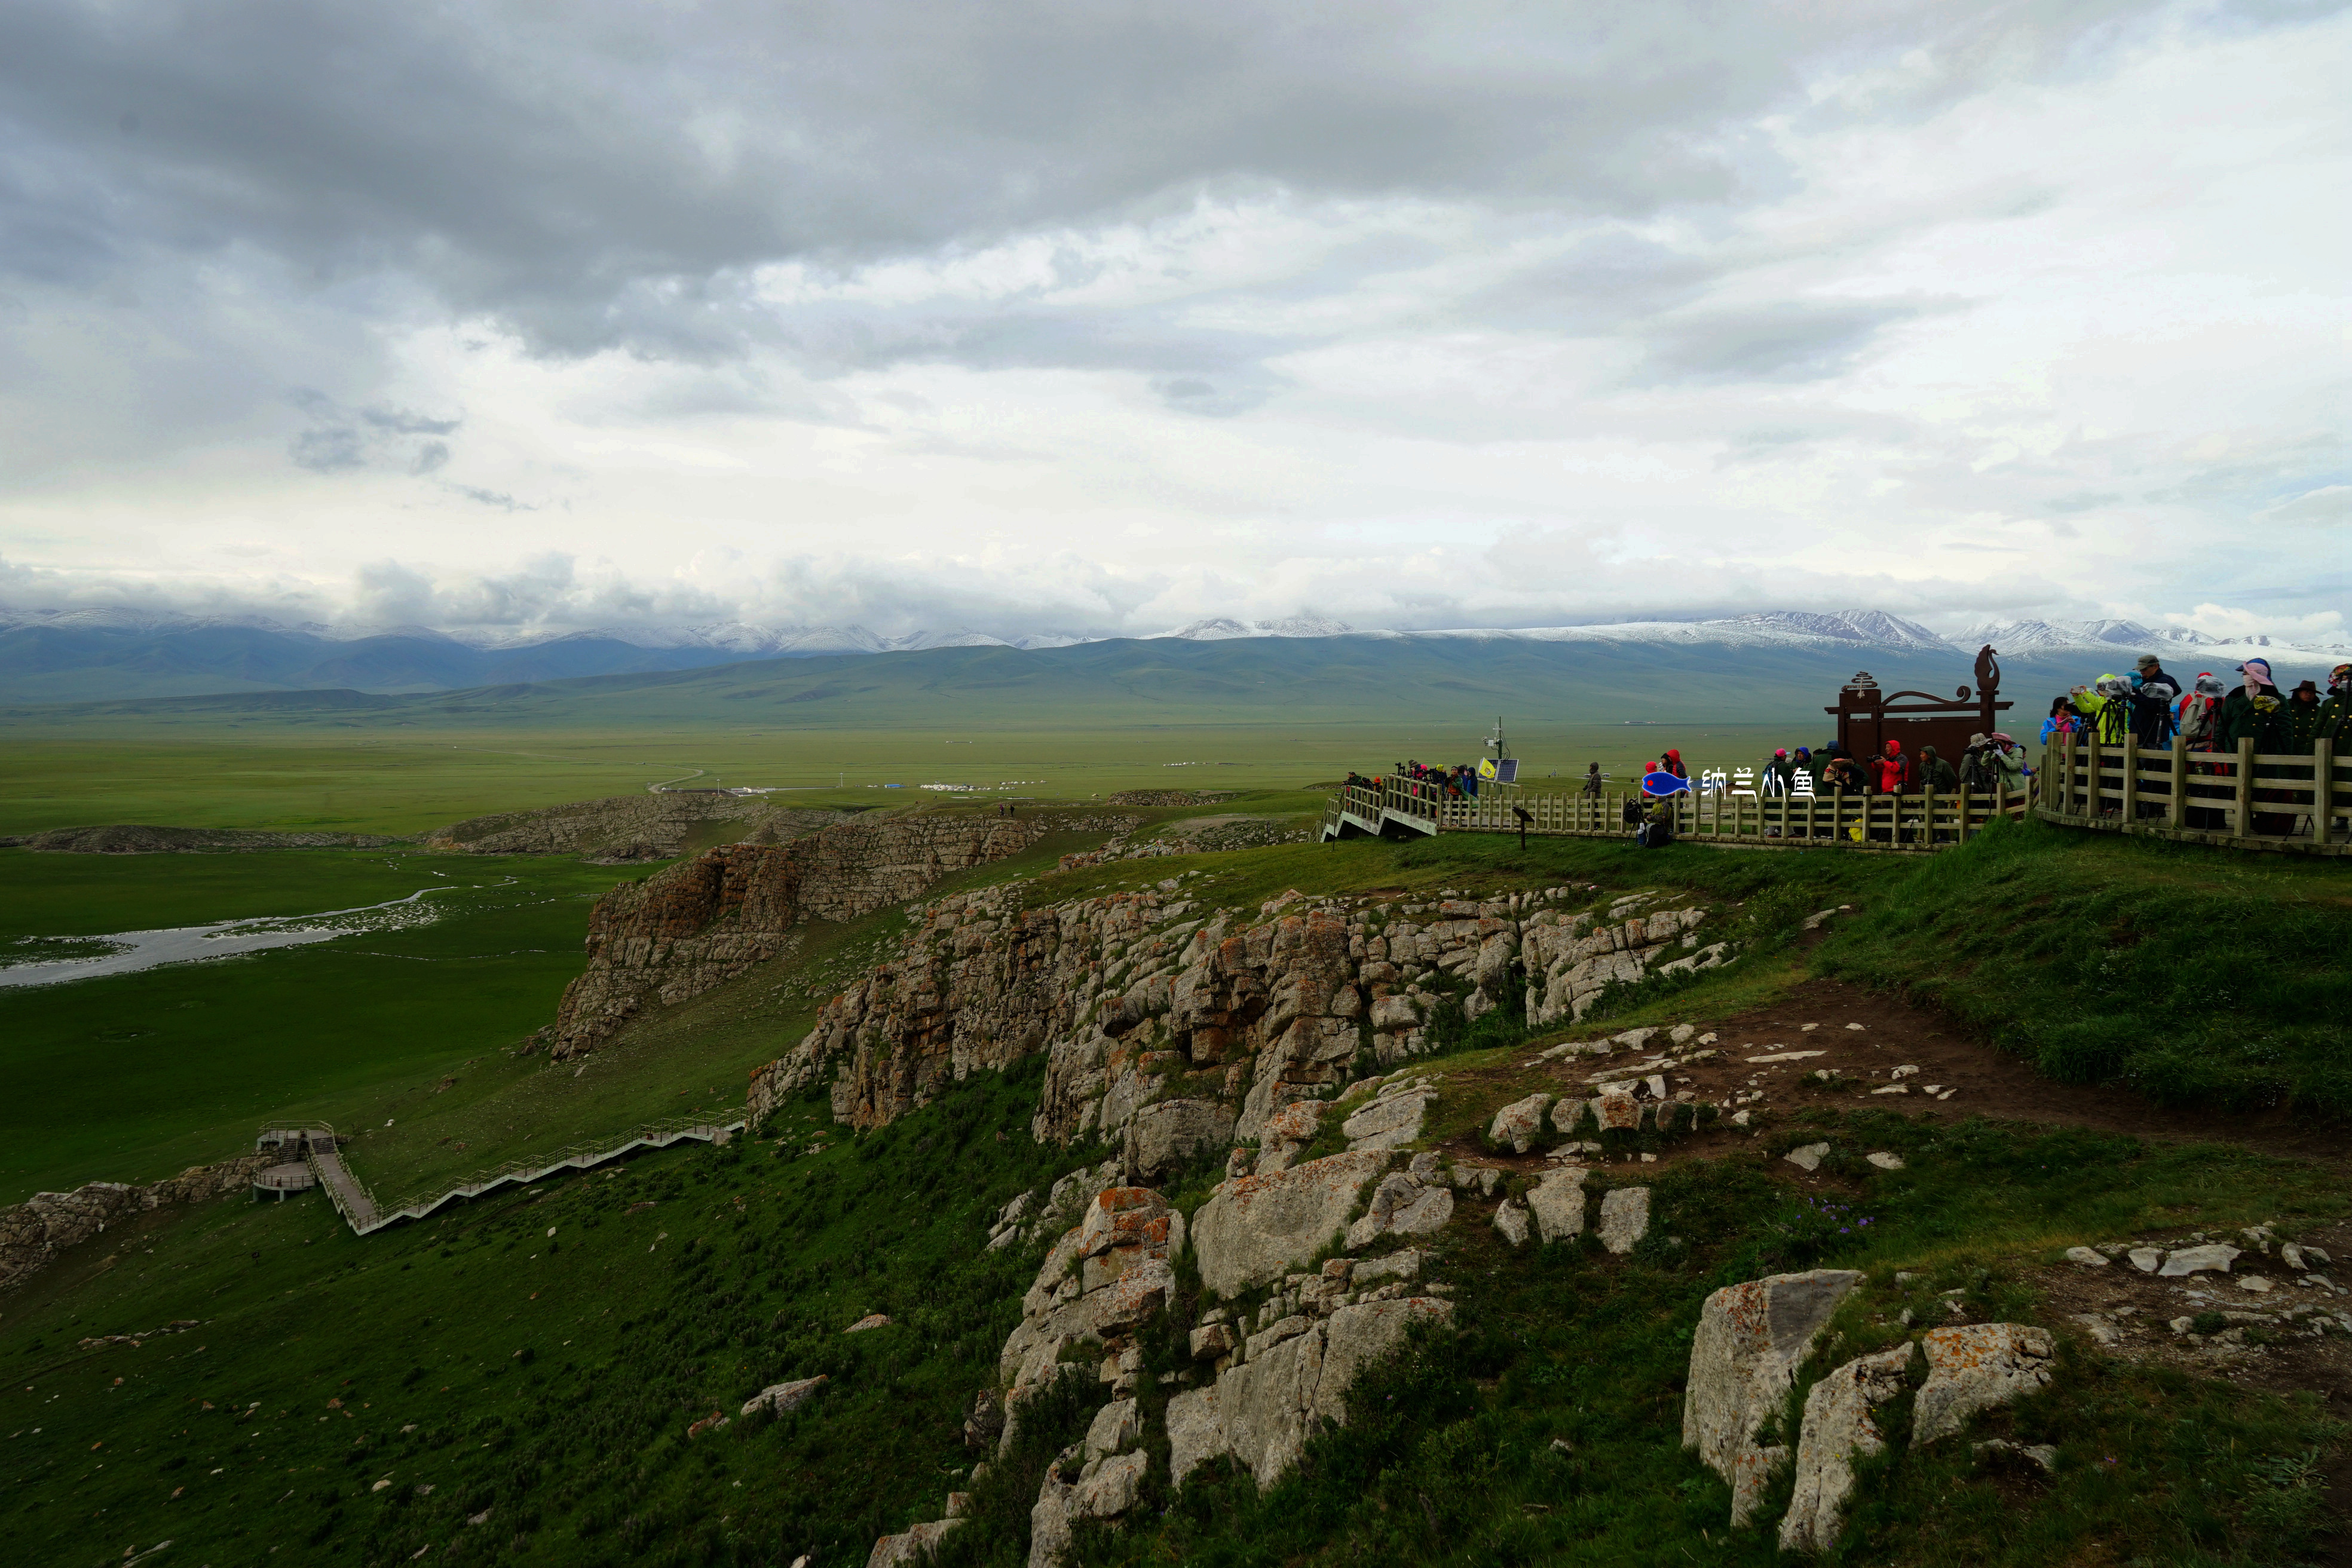 一天有四季，十里不同天！揭开新疆秘境巴音布鲁克草原的神秘面纱！